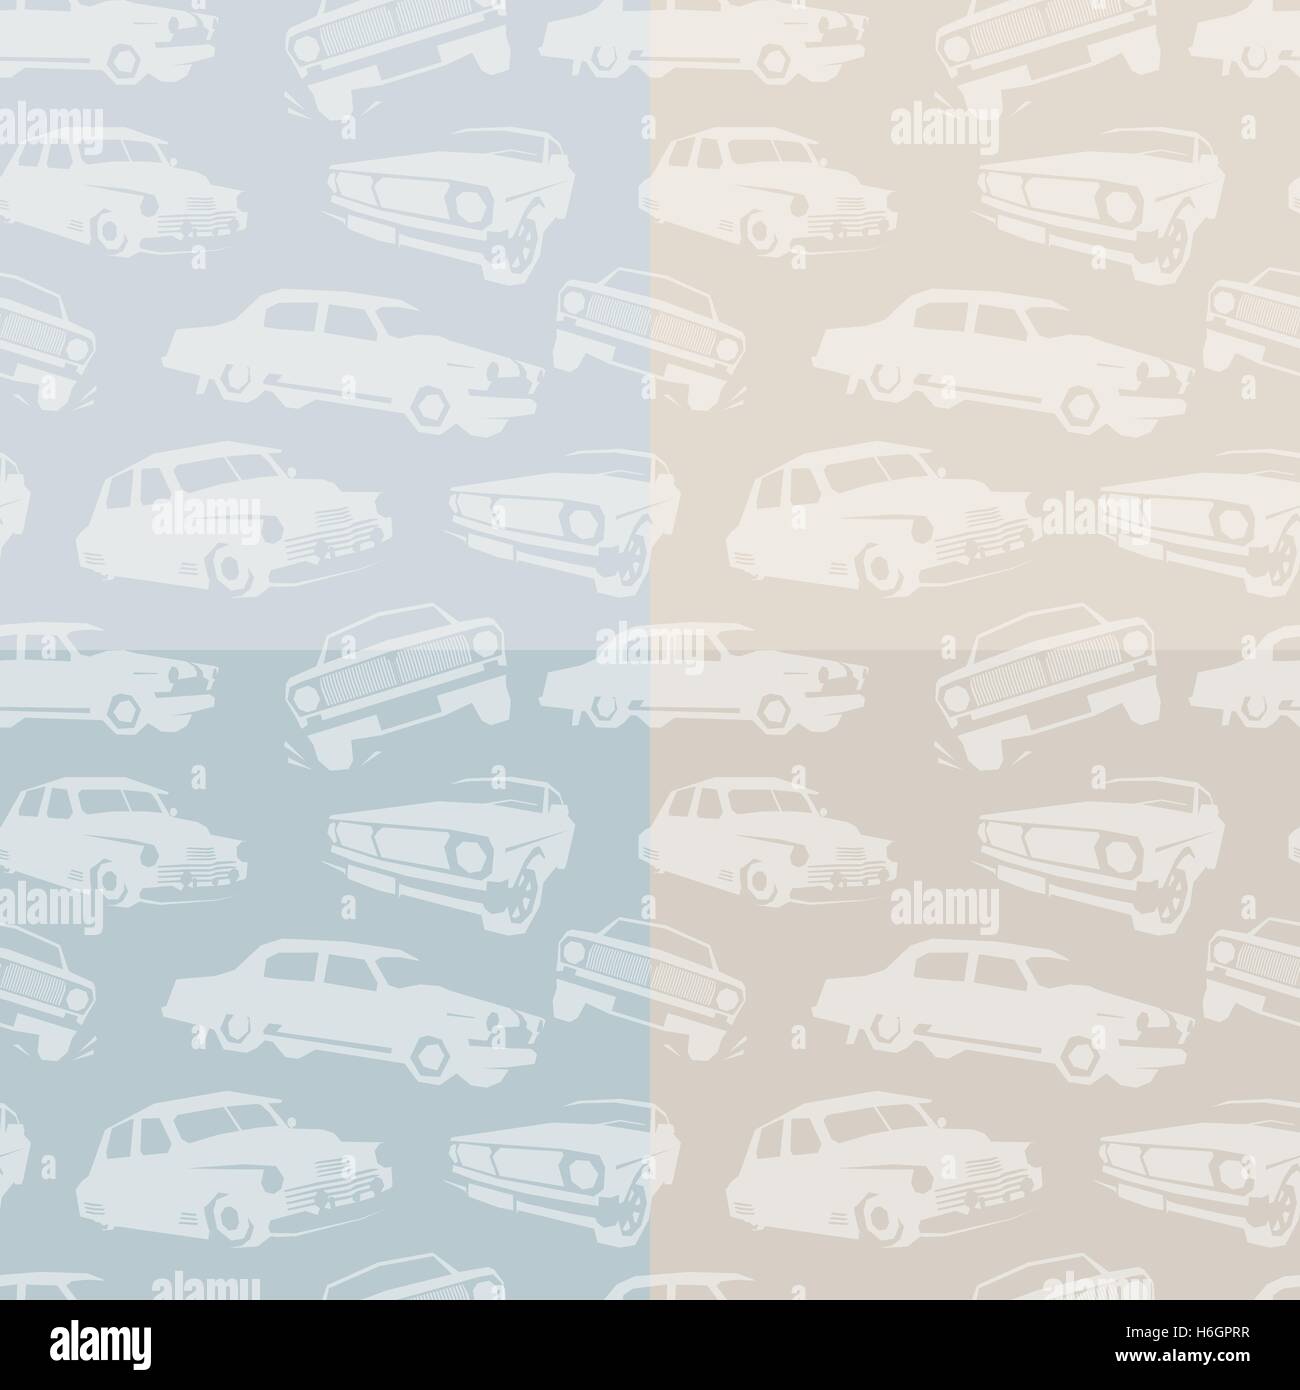 Isolierte abstrakte weiße Farbe Retro-Autos auf der blauen und rosa Hintergrundmuster. Automobile Kulisse. Kinder Tapete. Vektor-Illustration. Stock Vektor